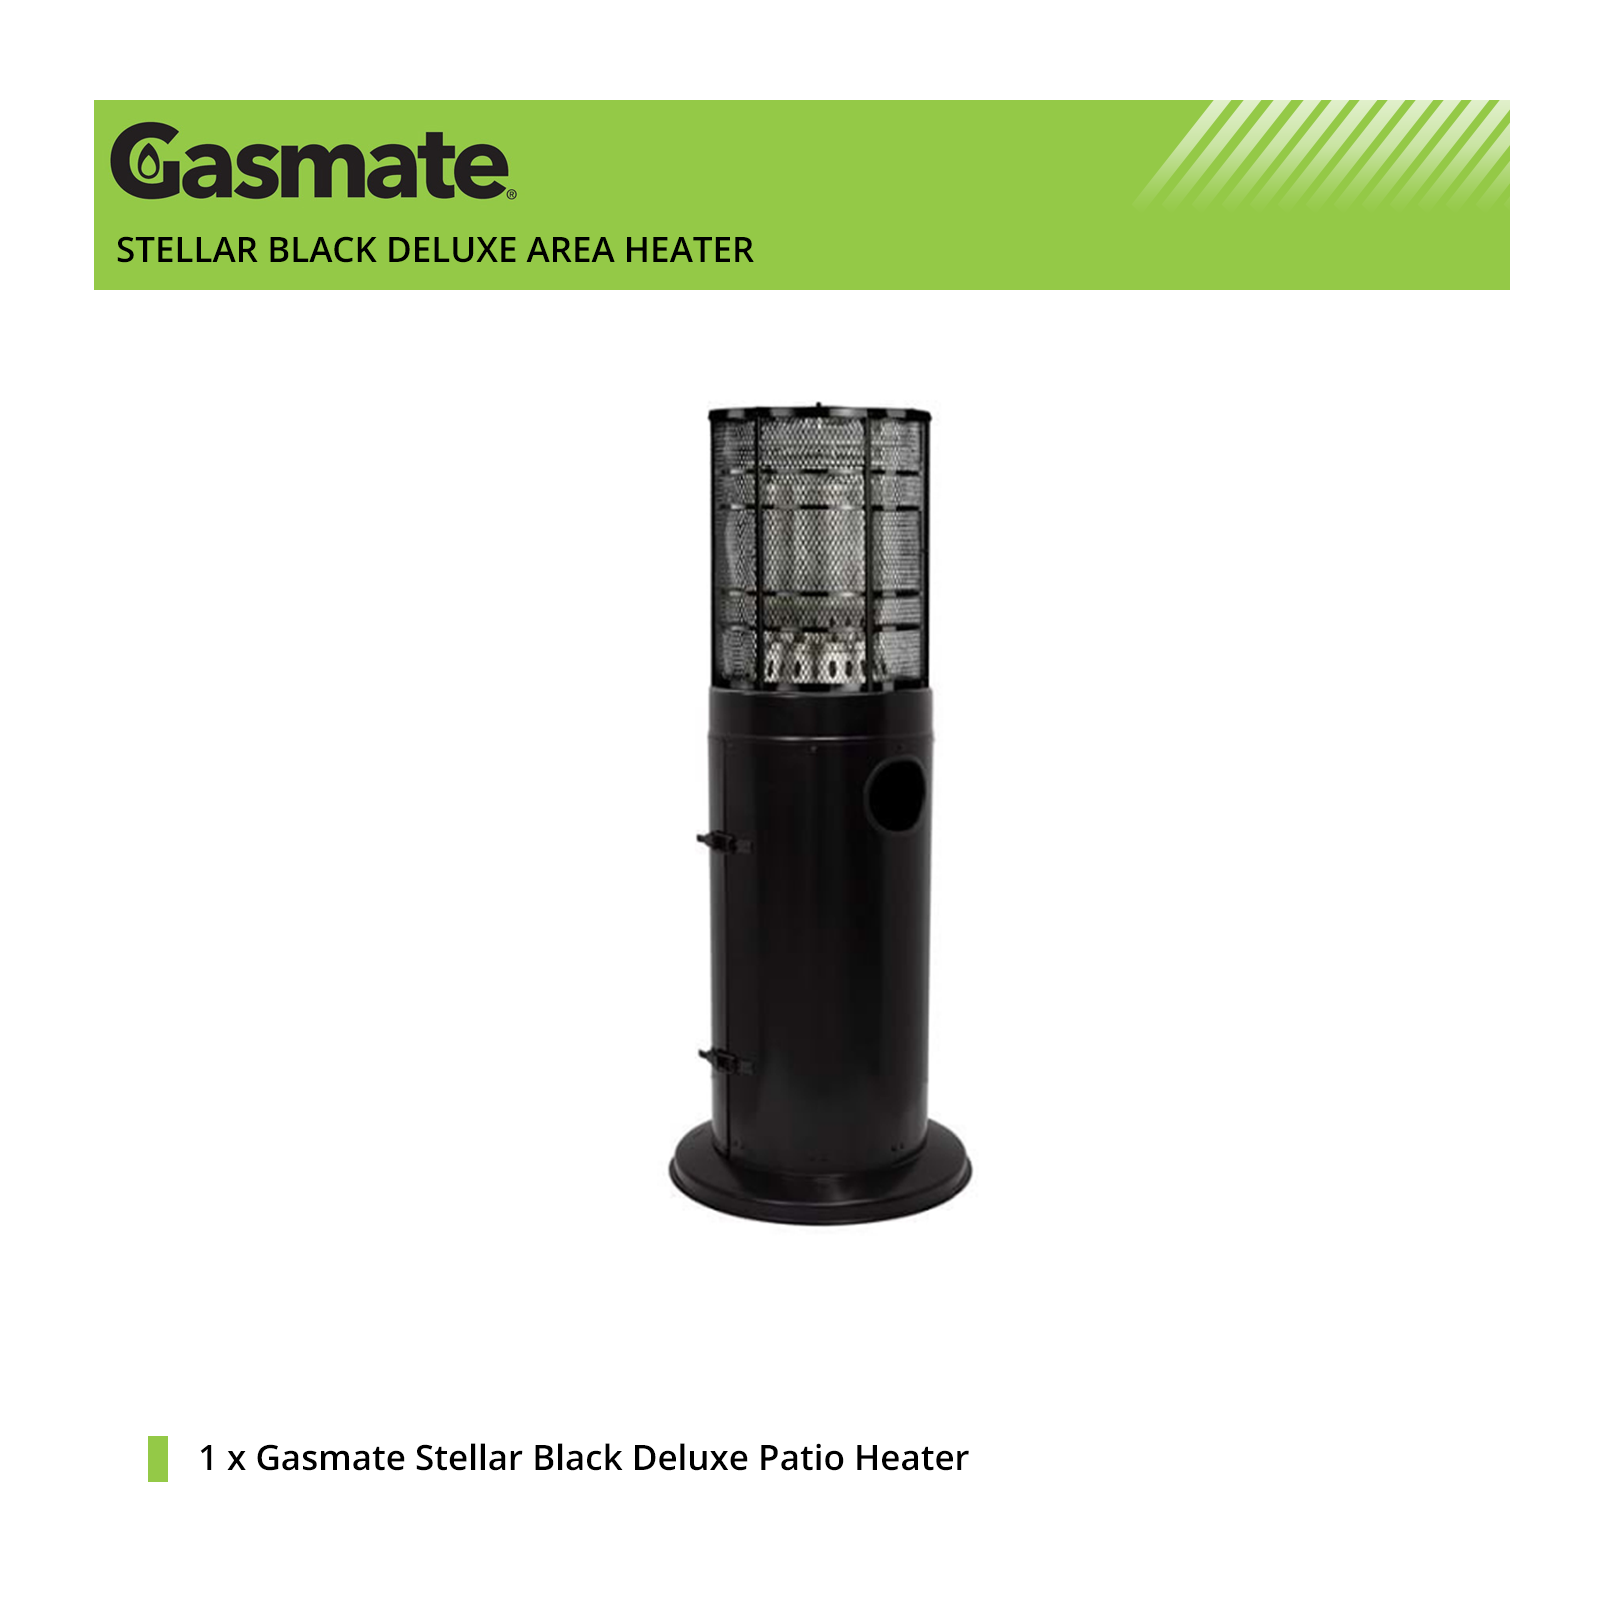 Gasmate Stellar Black Deluxe Area Heater - AH2066